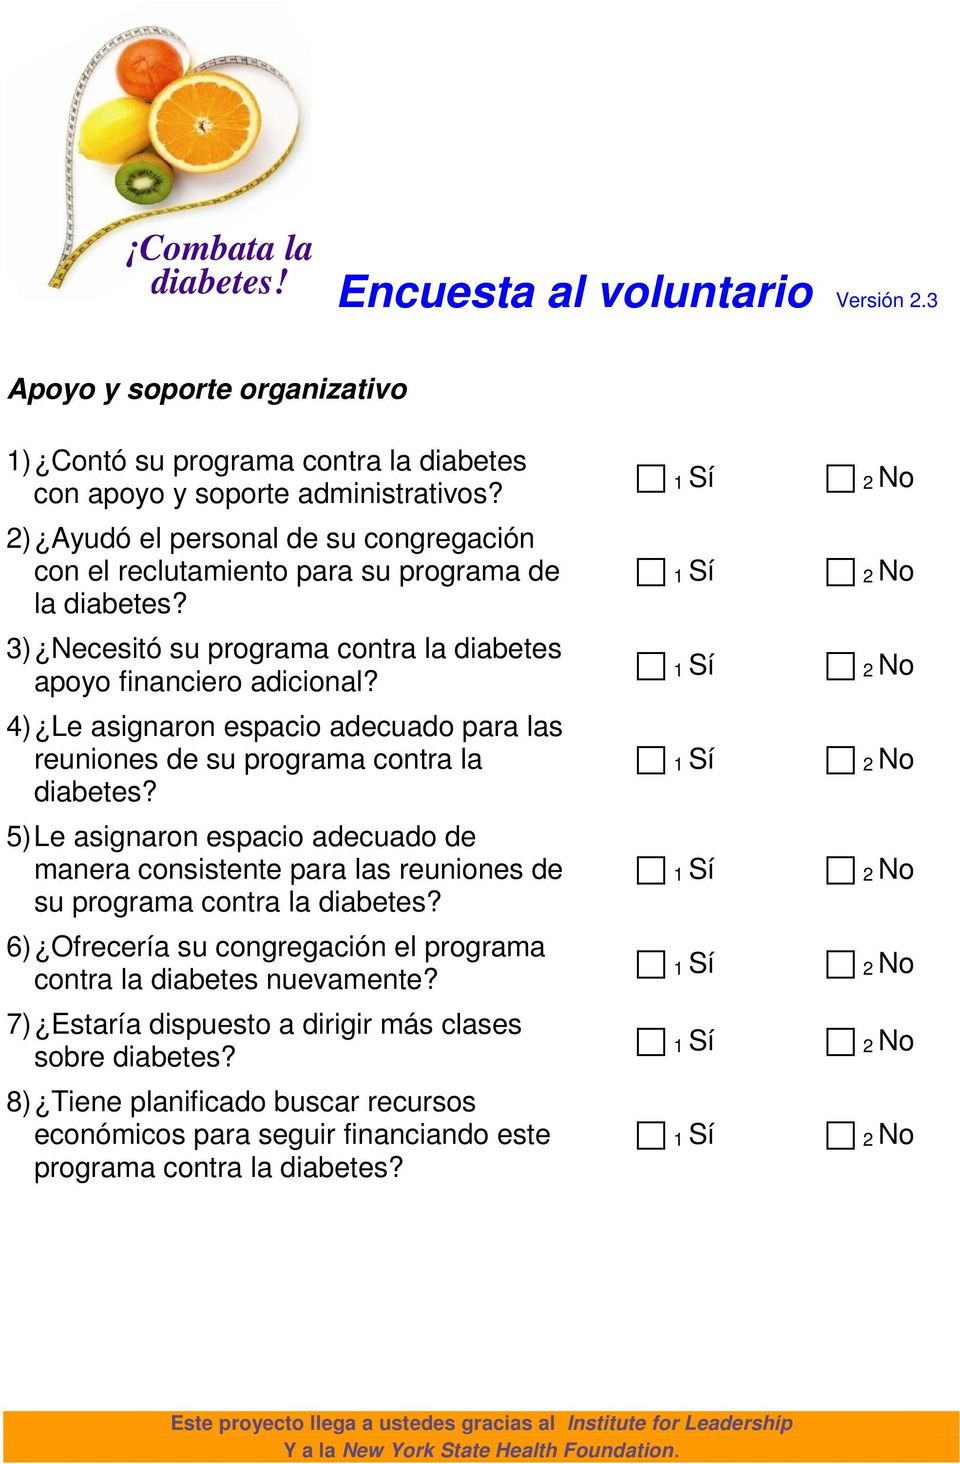 4) Le asignaron espacio adecuado para las reuniones de su programa contra la diabetes?